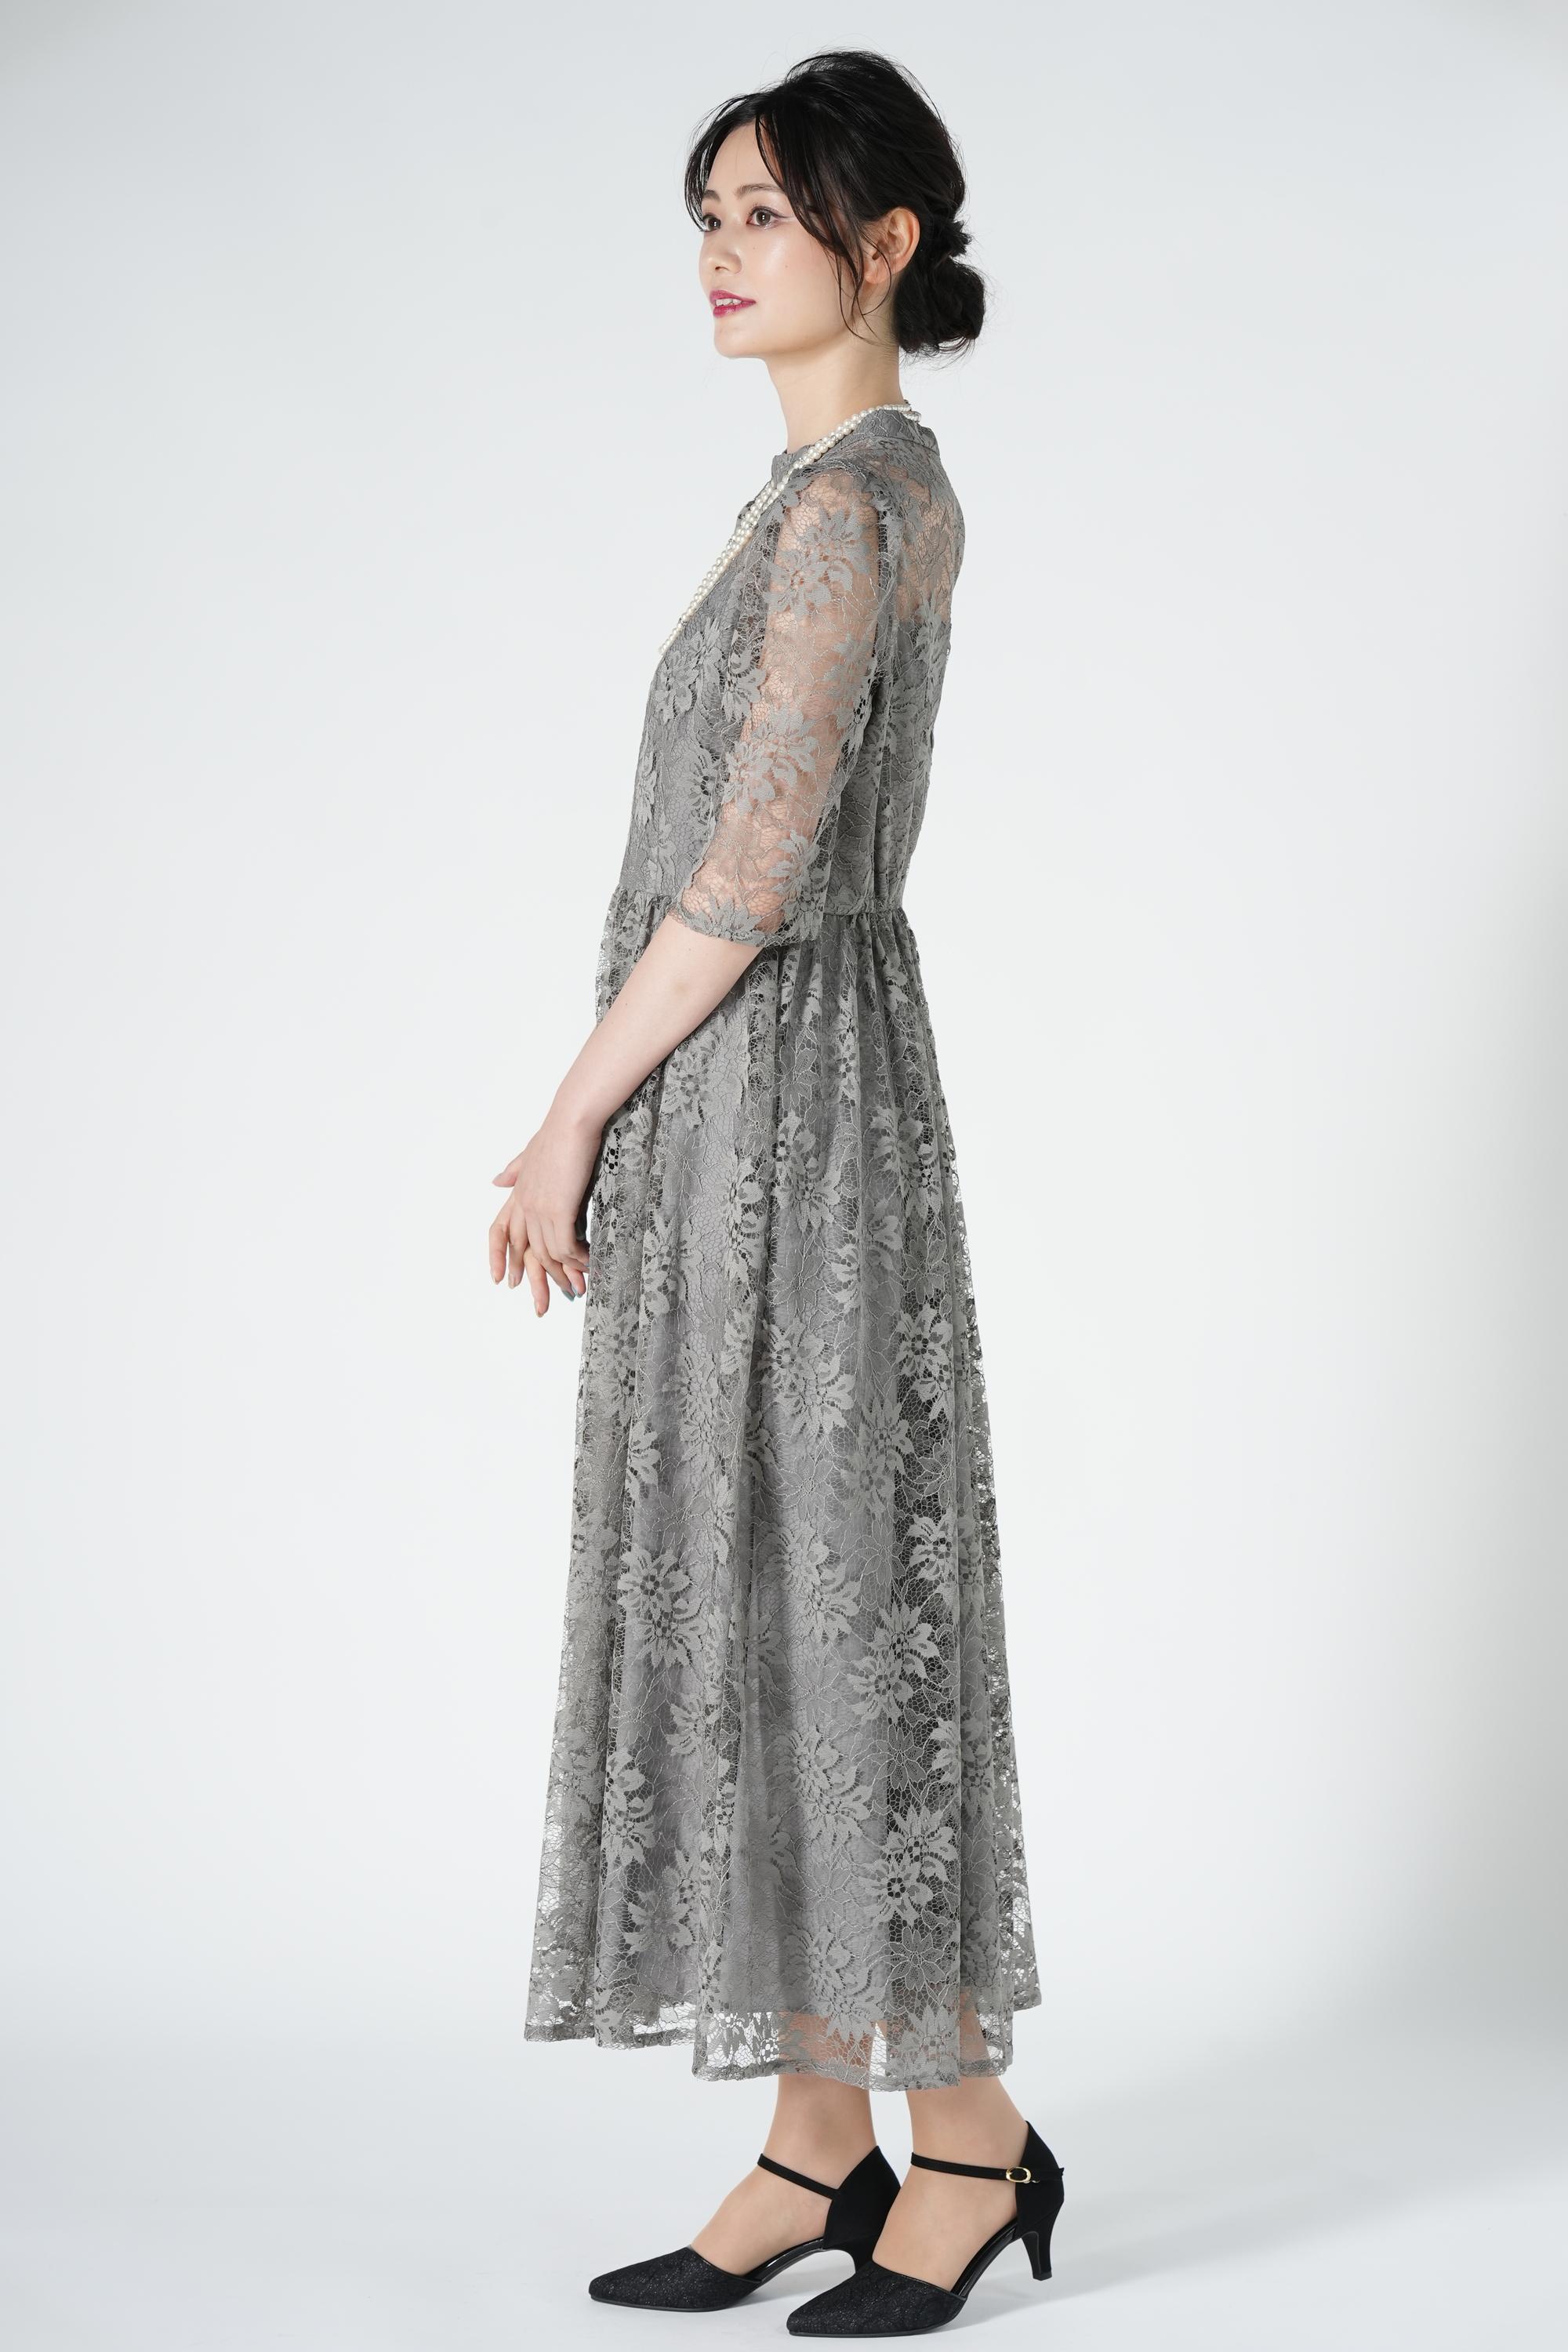 AIMER ニュアンスグレー花刺繍レースドレス (M) をレンタル - 結婚式パーティーのドレスレンタルはおしゃれコンシャス